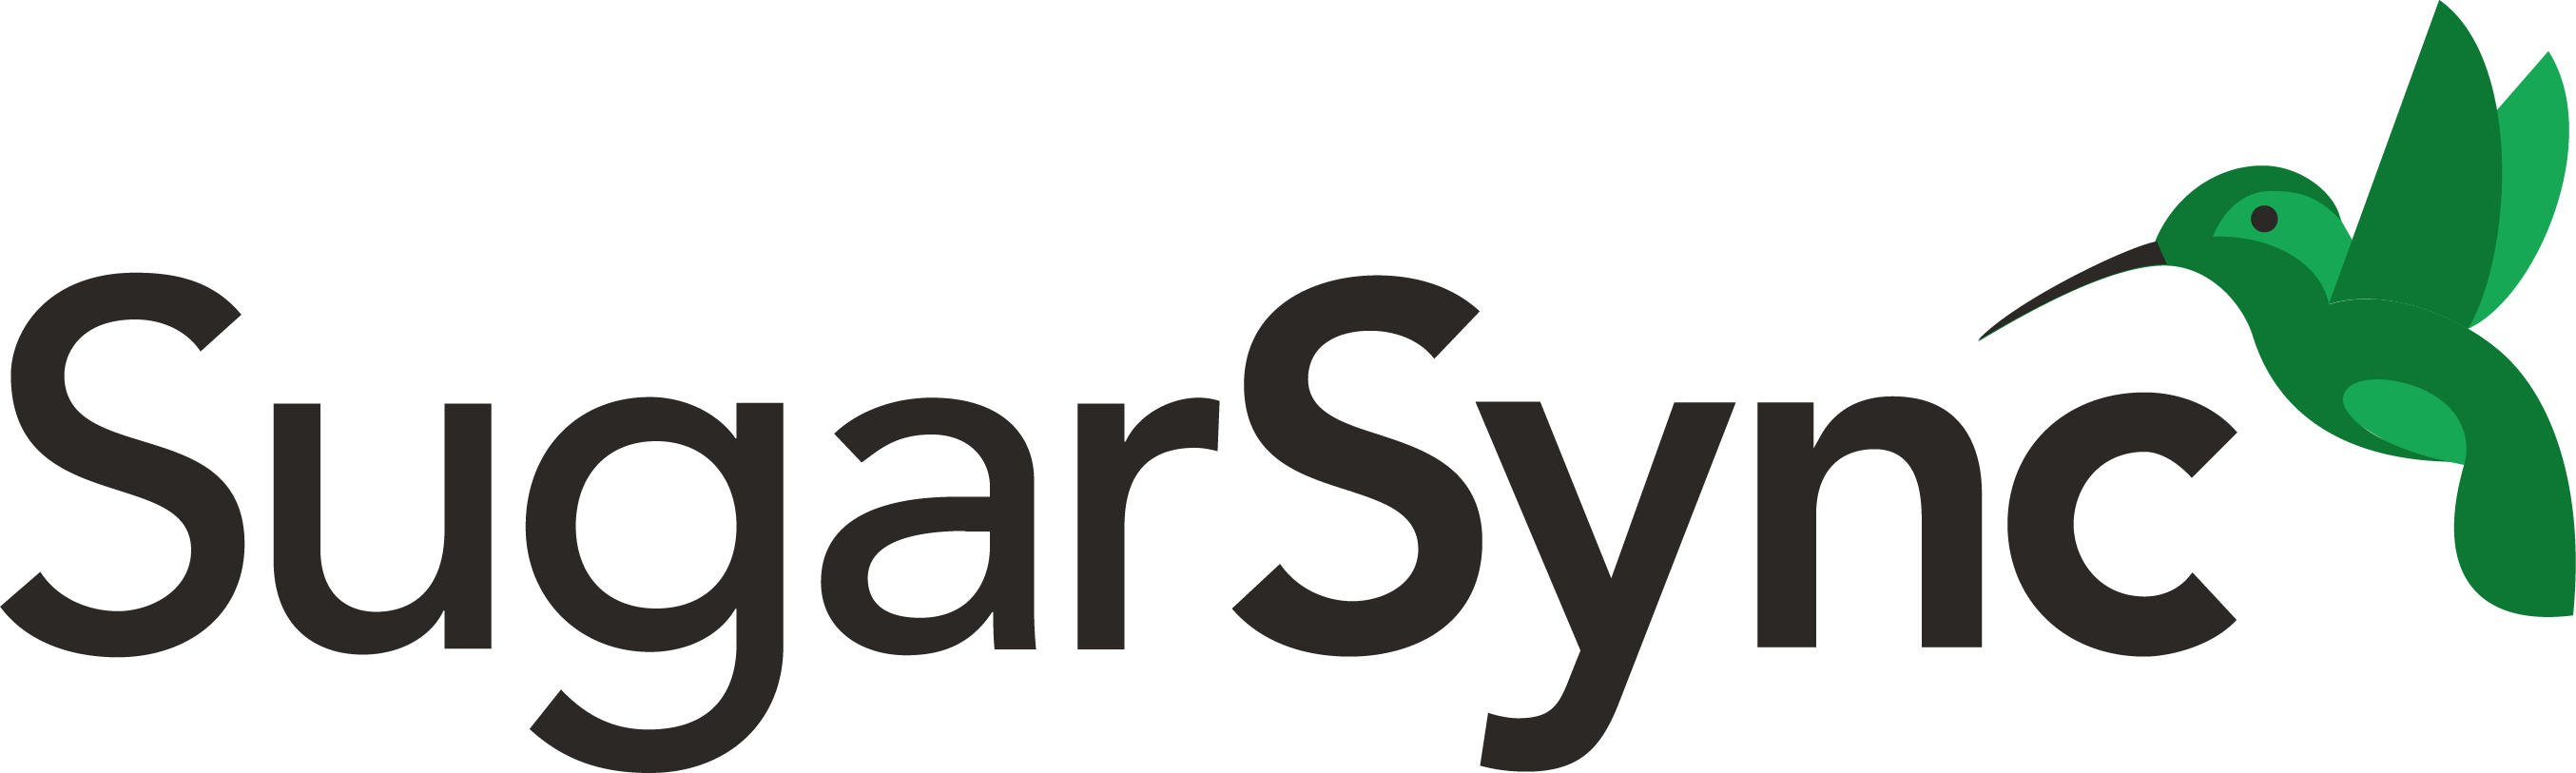 SugarSync Logo png